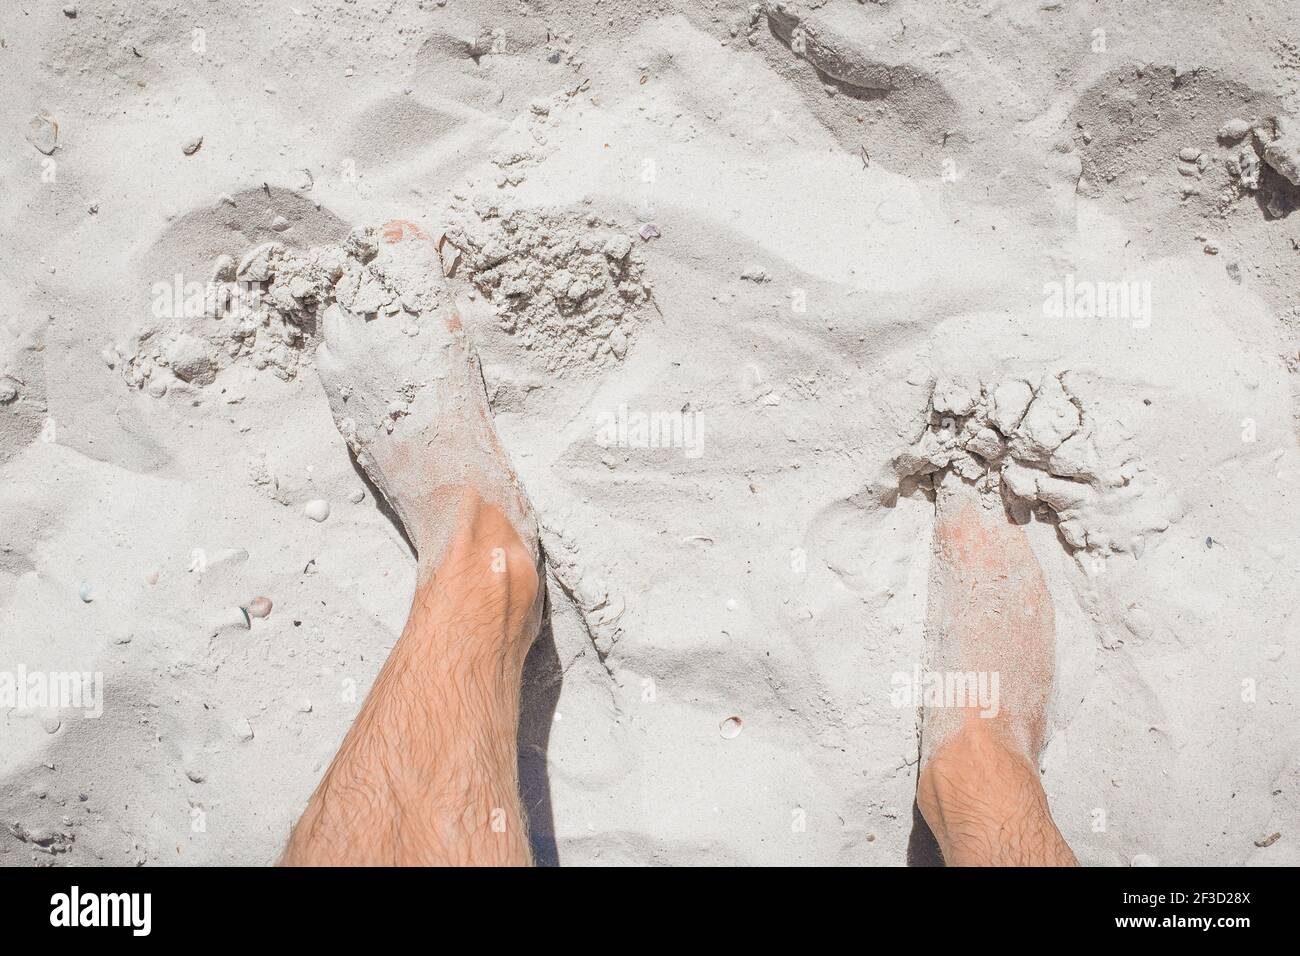 Die Beine des jungen Mannes stehen entspannt auf dem weißen Strandsand, der Blick von oben. Stockfoto